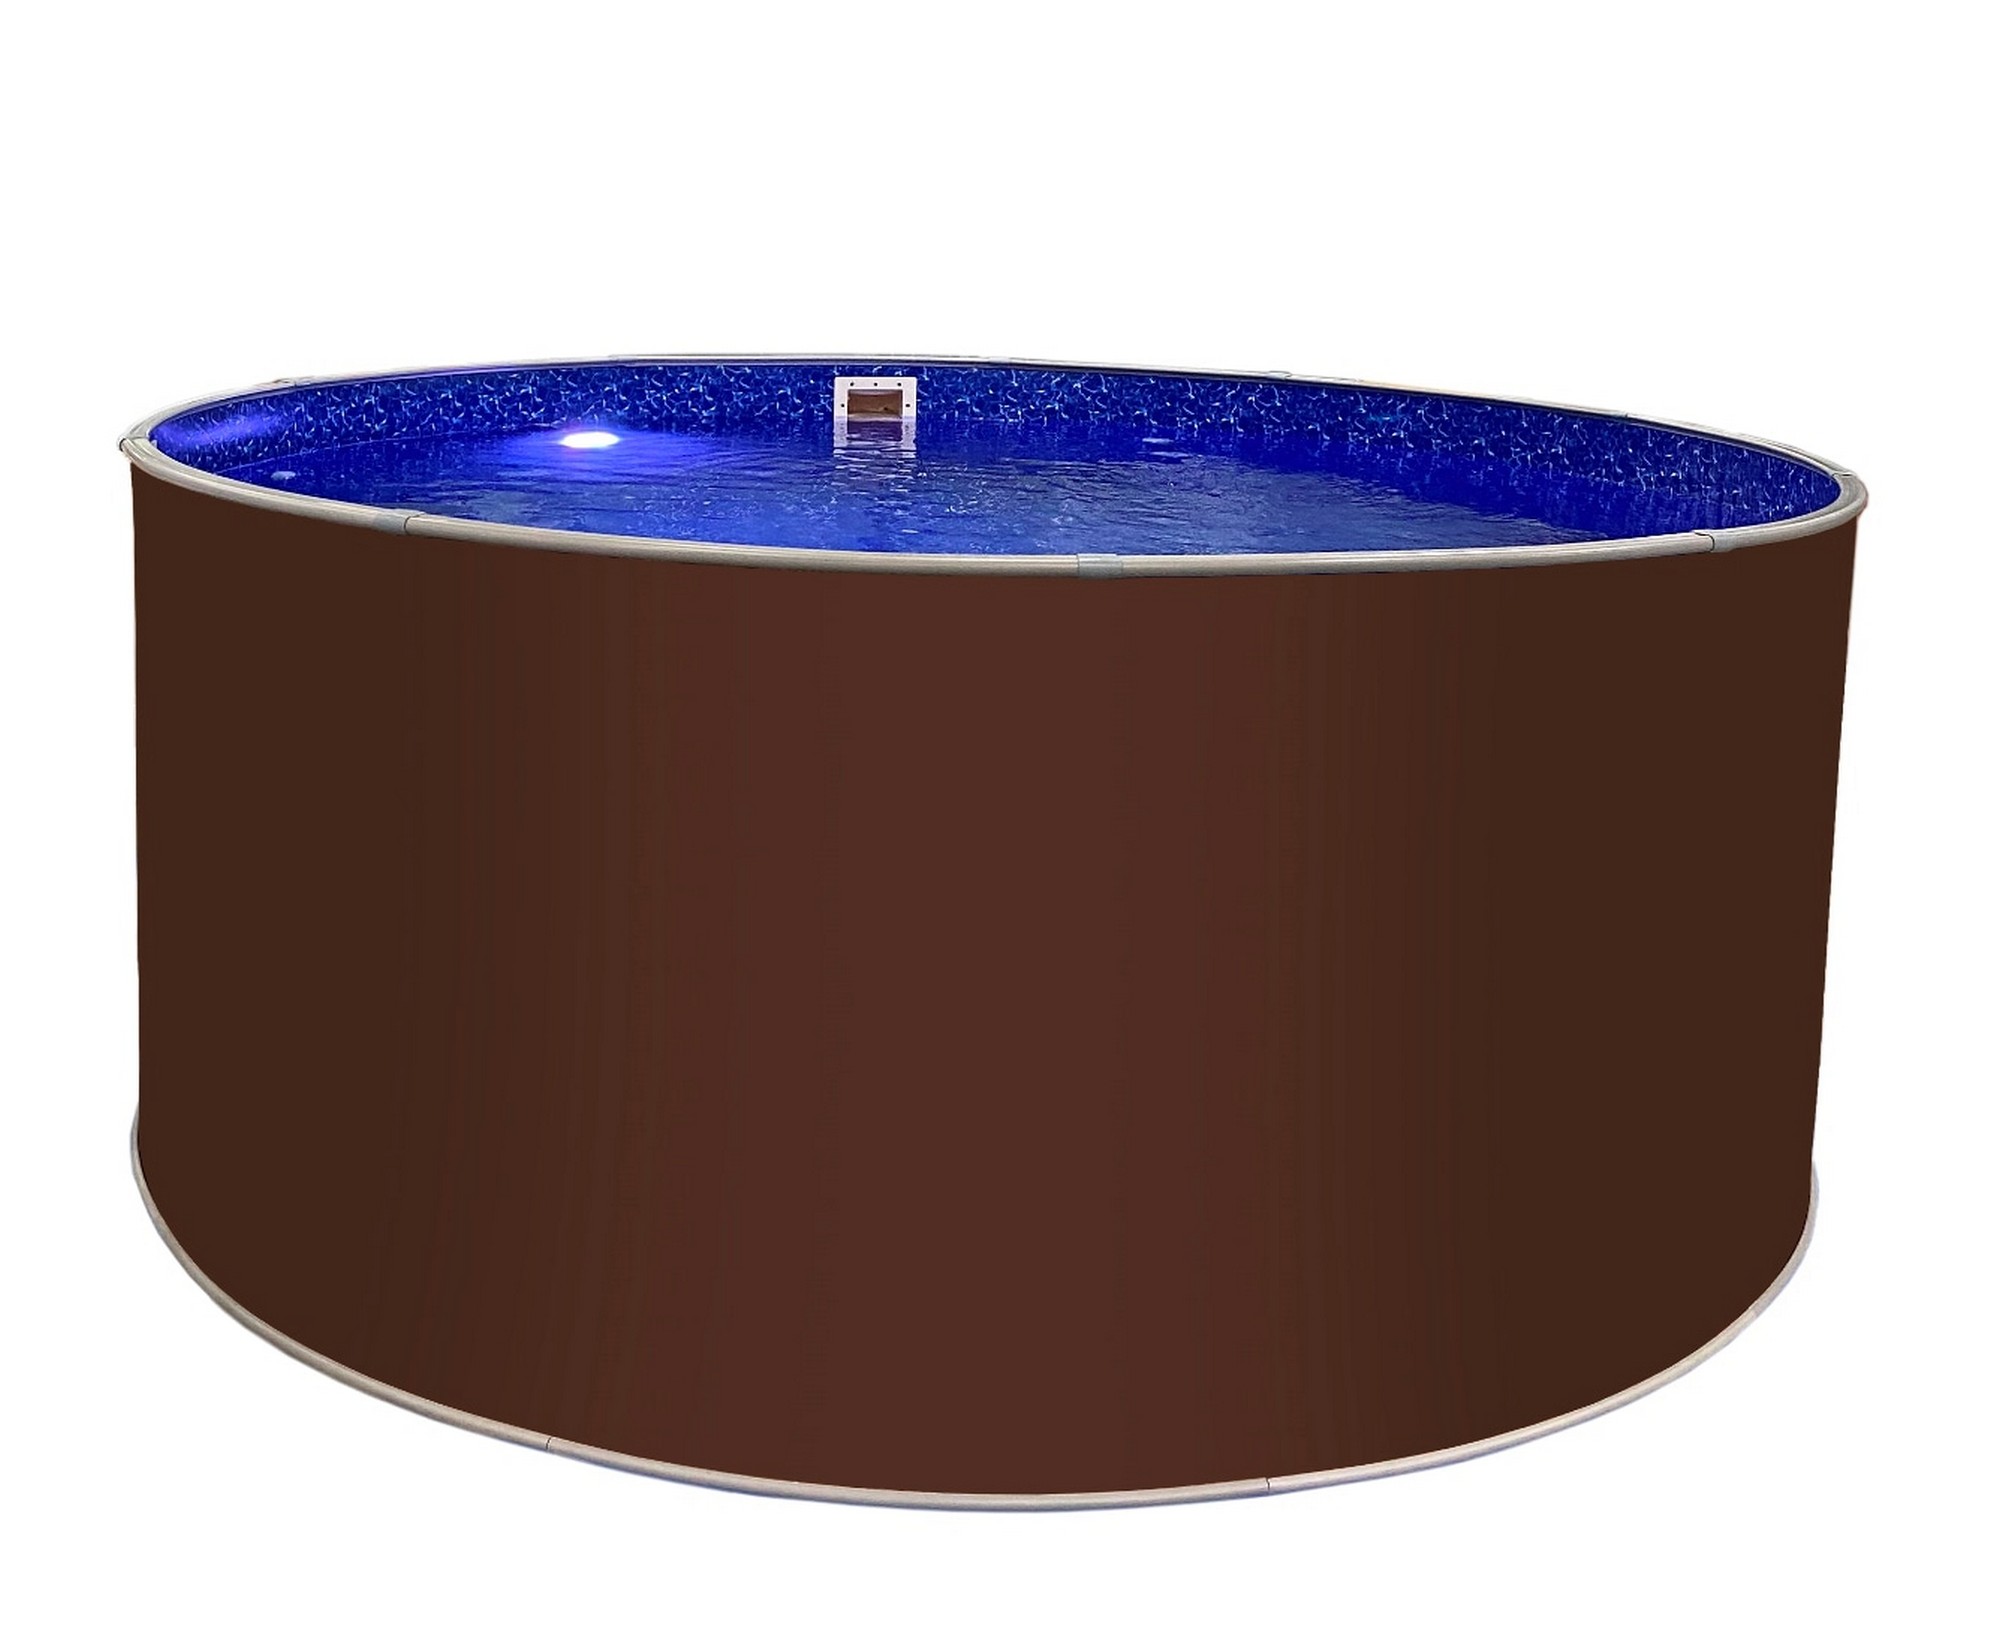 Круглый бассейн Лагуна 450х125см ТМ820/45011 темный шоколад (RAL 8017)